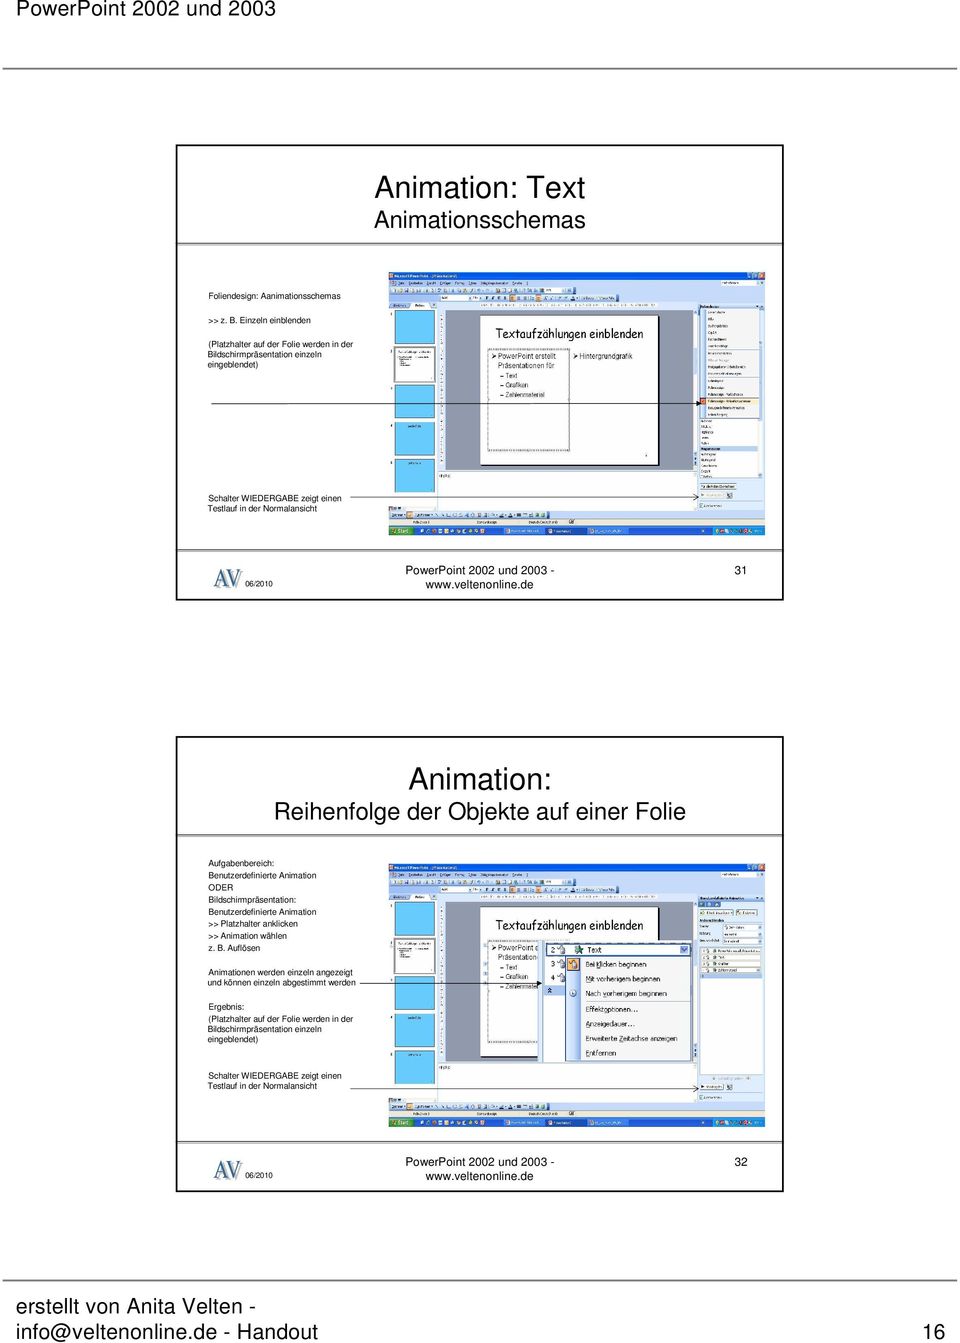 Reihenfolge der Objekte auf einer Folie Aufgabenbereich: Benutzerdefinierte Animation ODER Bildschirmpräsentation: Benutzerdefinierte Animation >> Platzhalter anklicken >> Animation